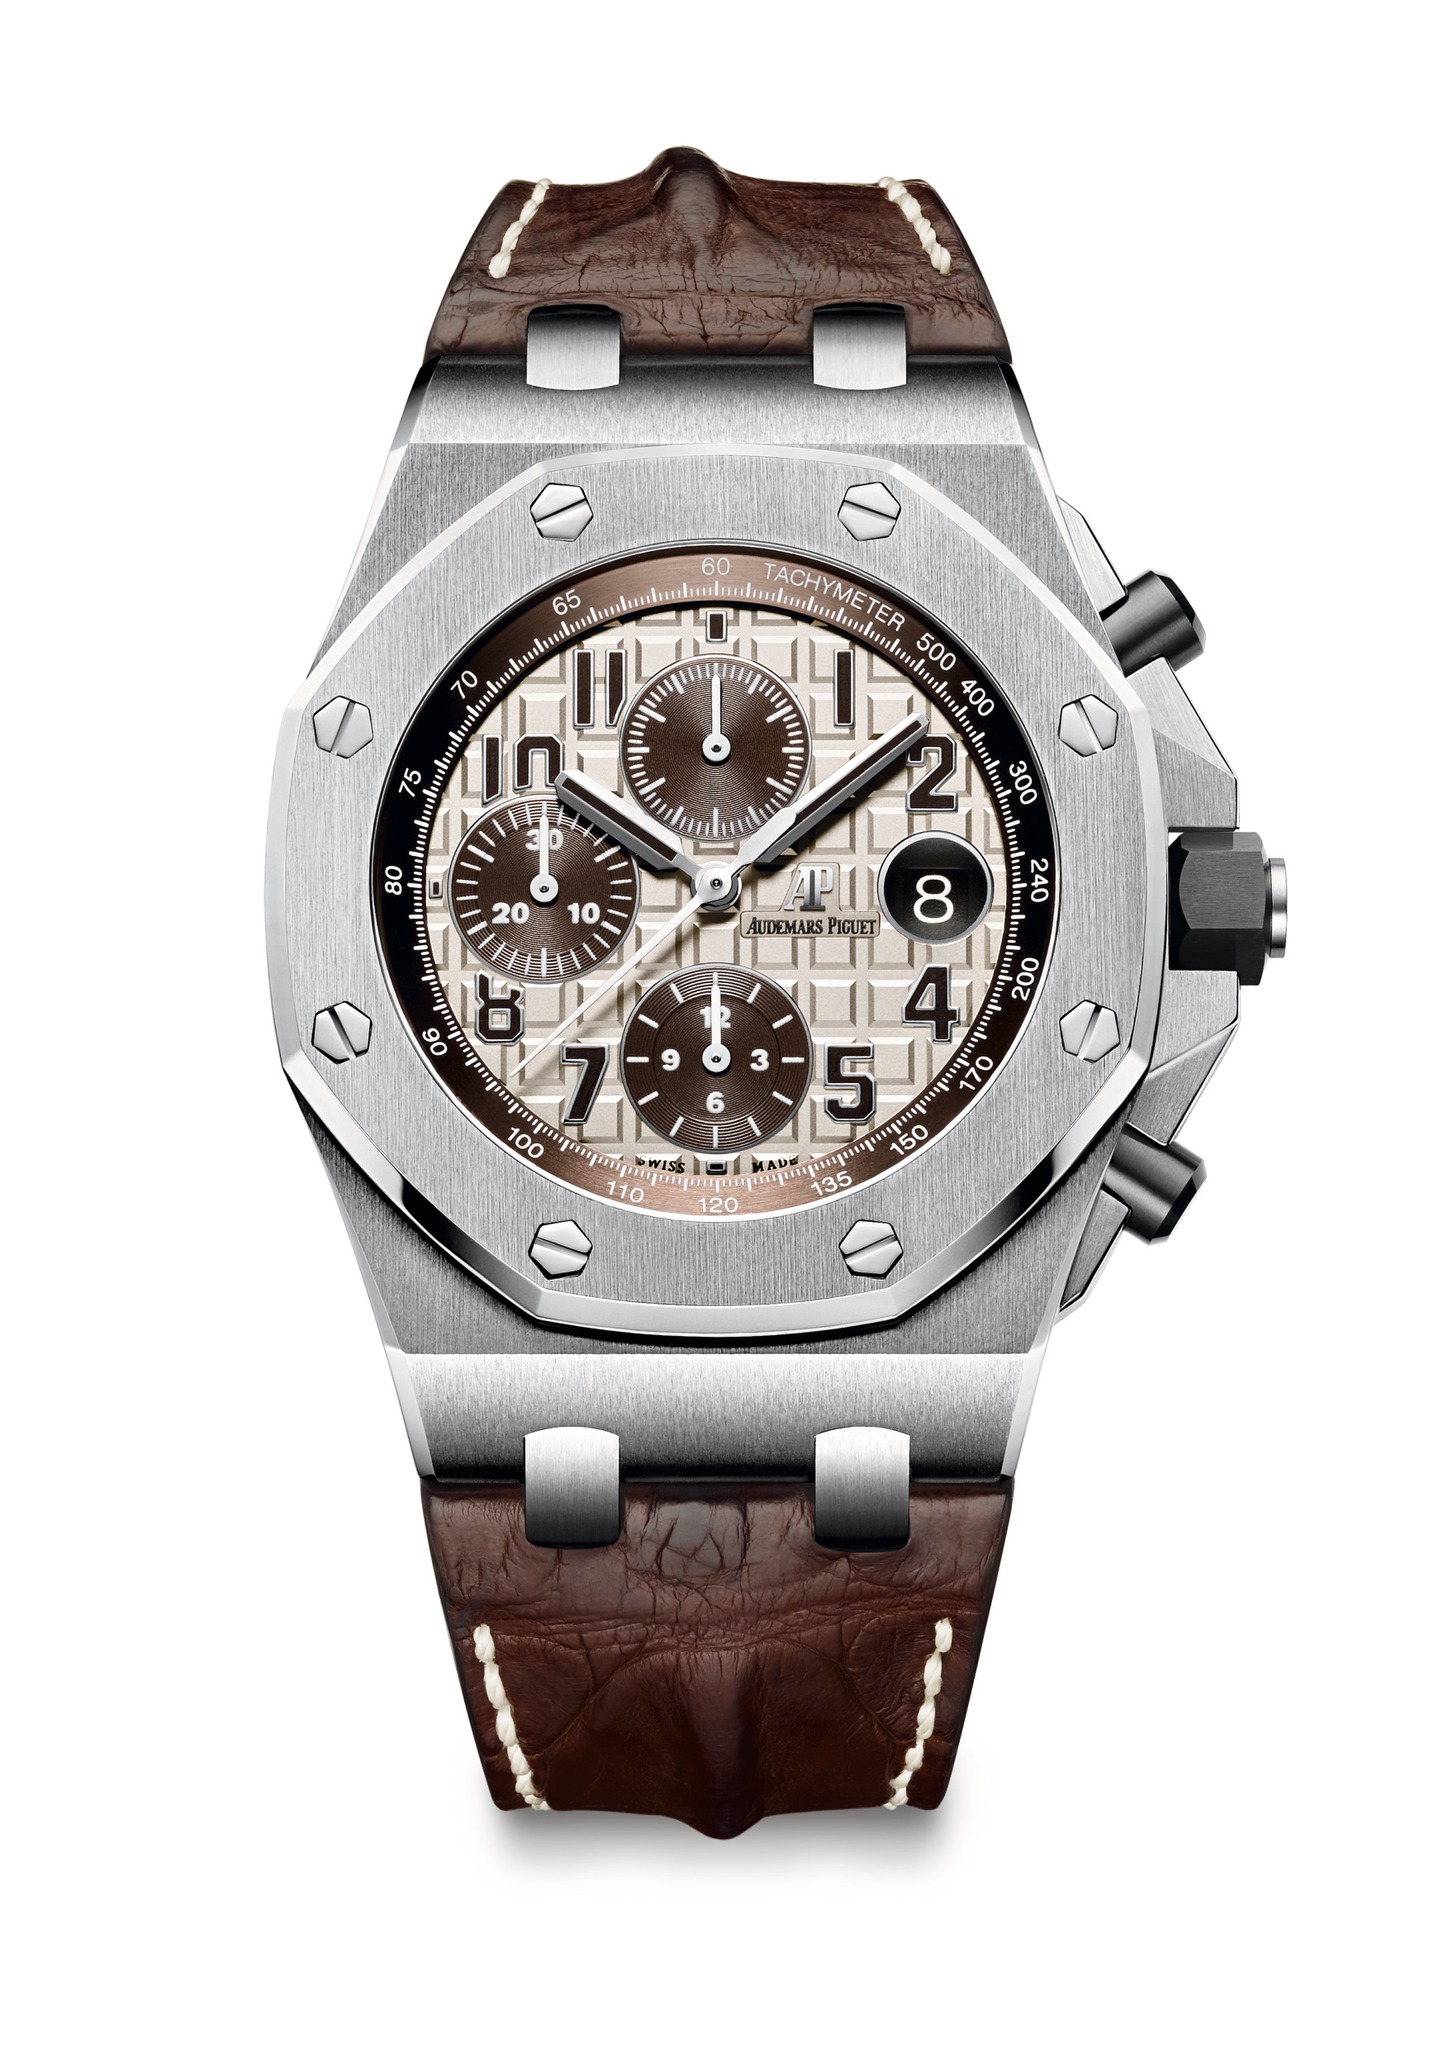 Audemars Piguet New Royal Oak Offshore Chronograph Steel watch REF: 26470ST.OO.A801CR.01